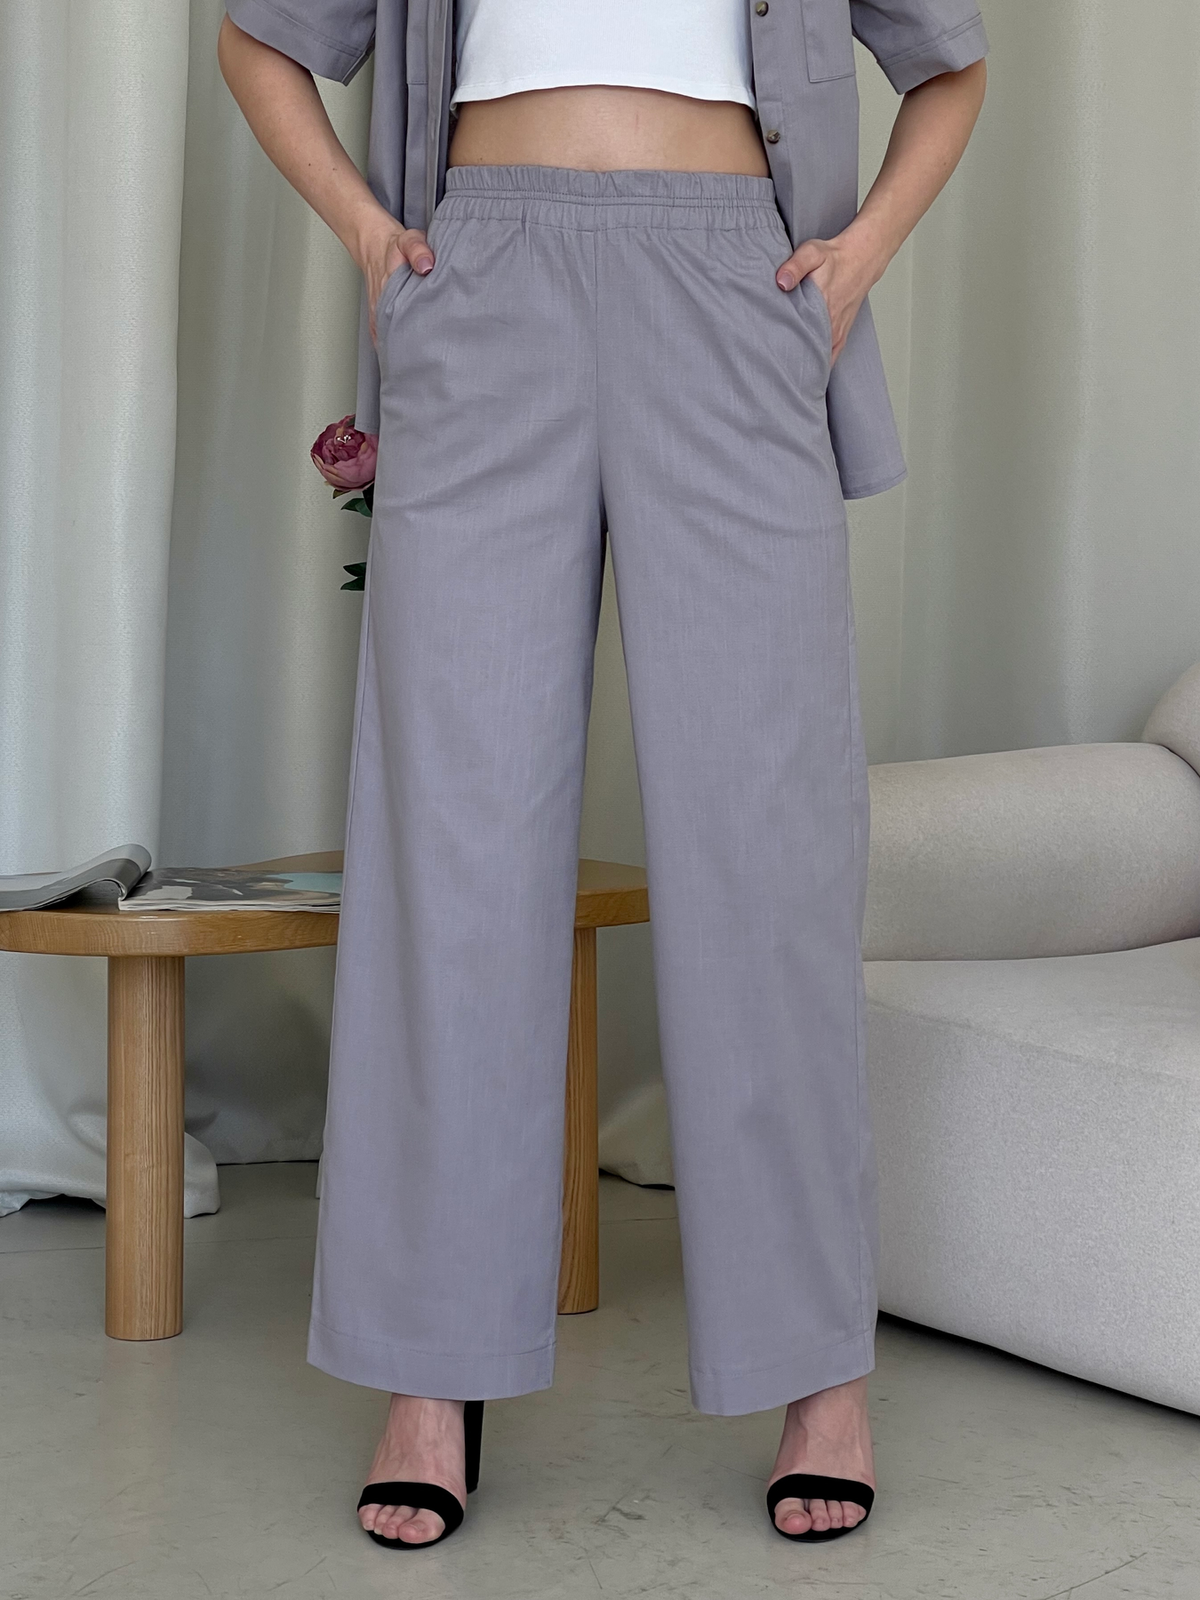 Купить Льняной костюм с штанами палаццо и рубашкой серый Лорен 100001203 размер 42-44 (S-M) в интернет-магазине